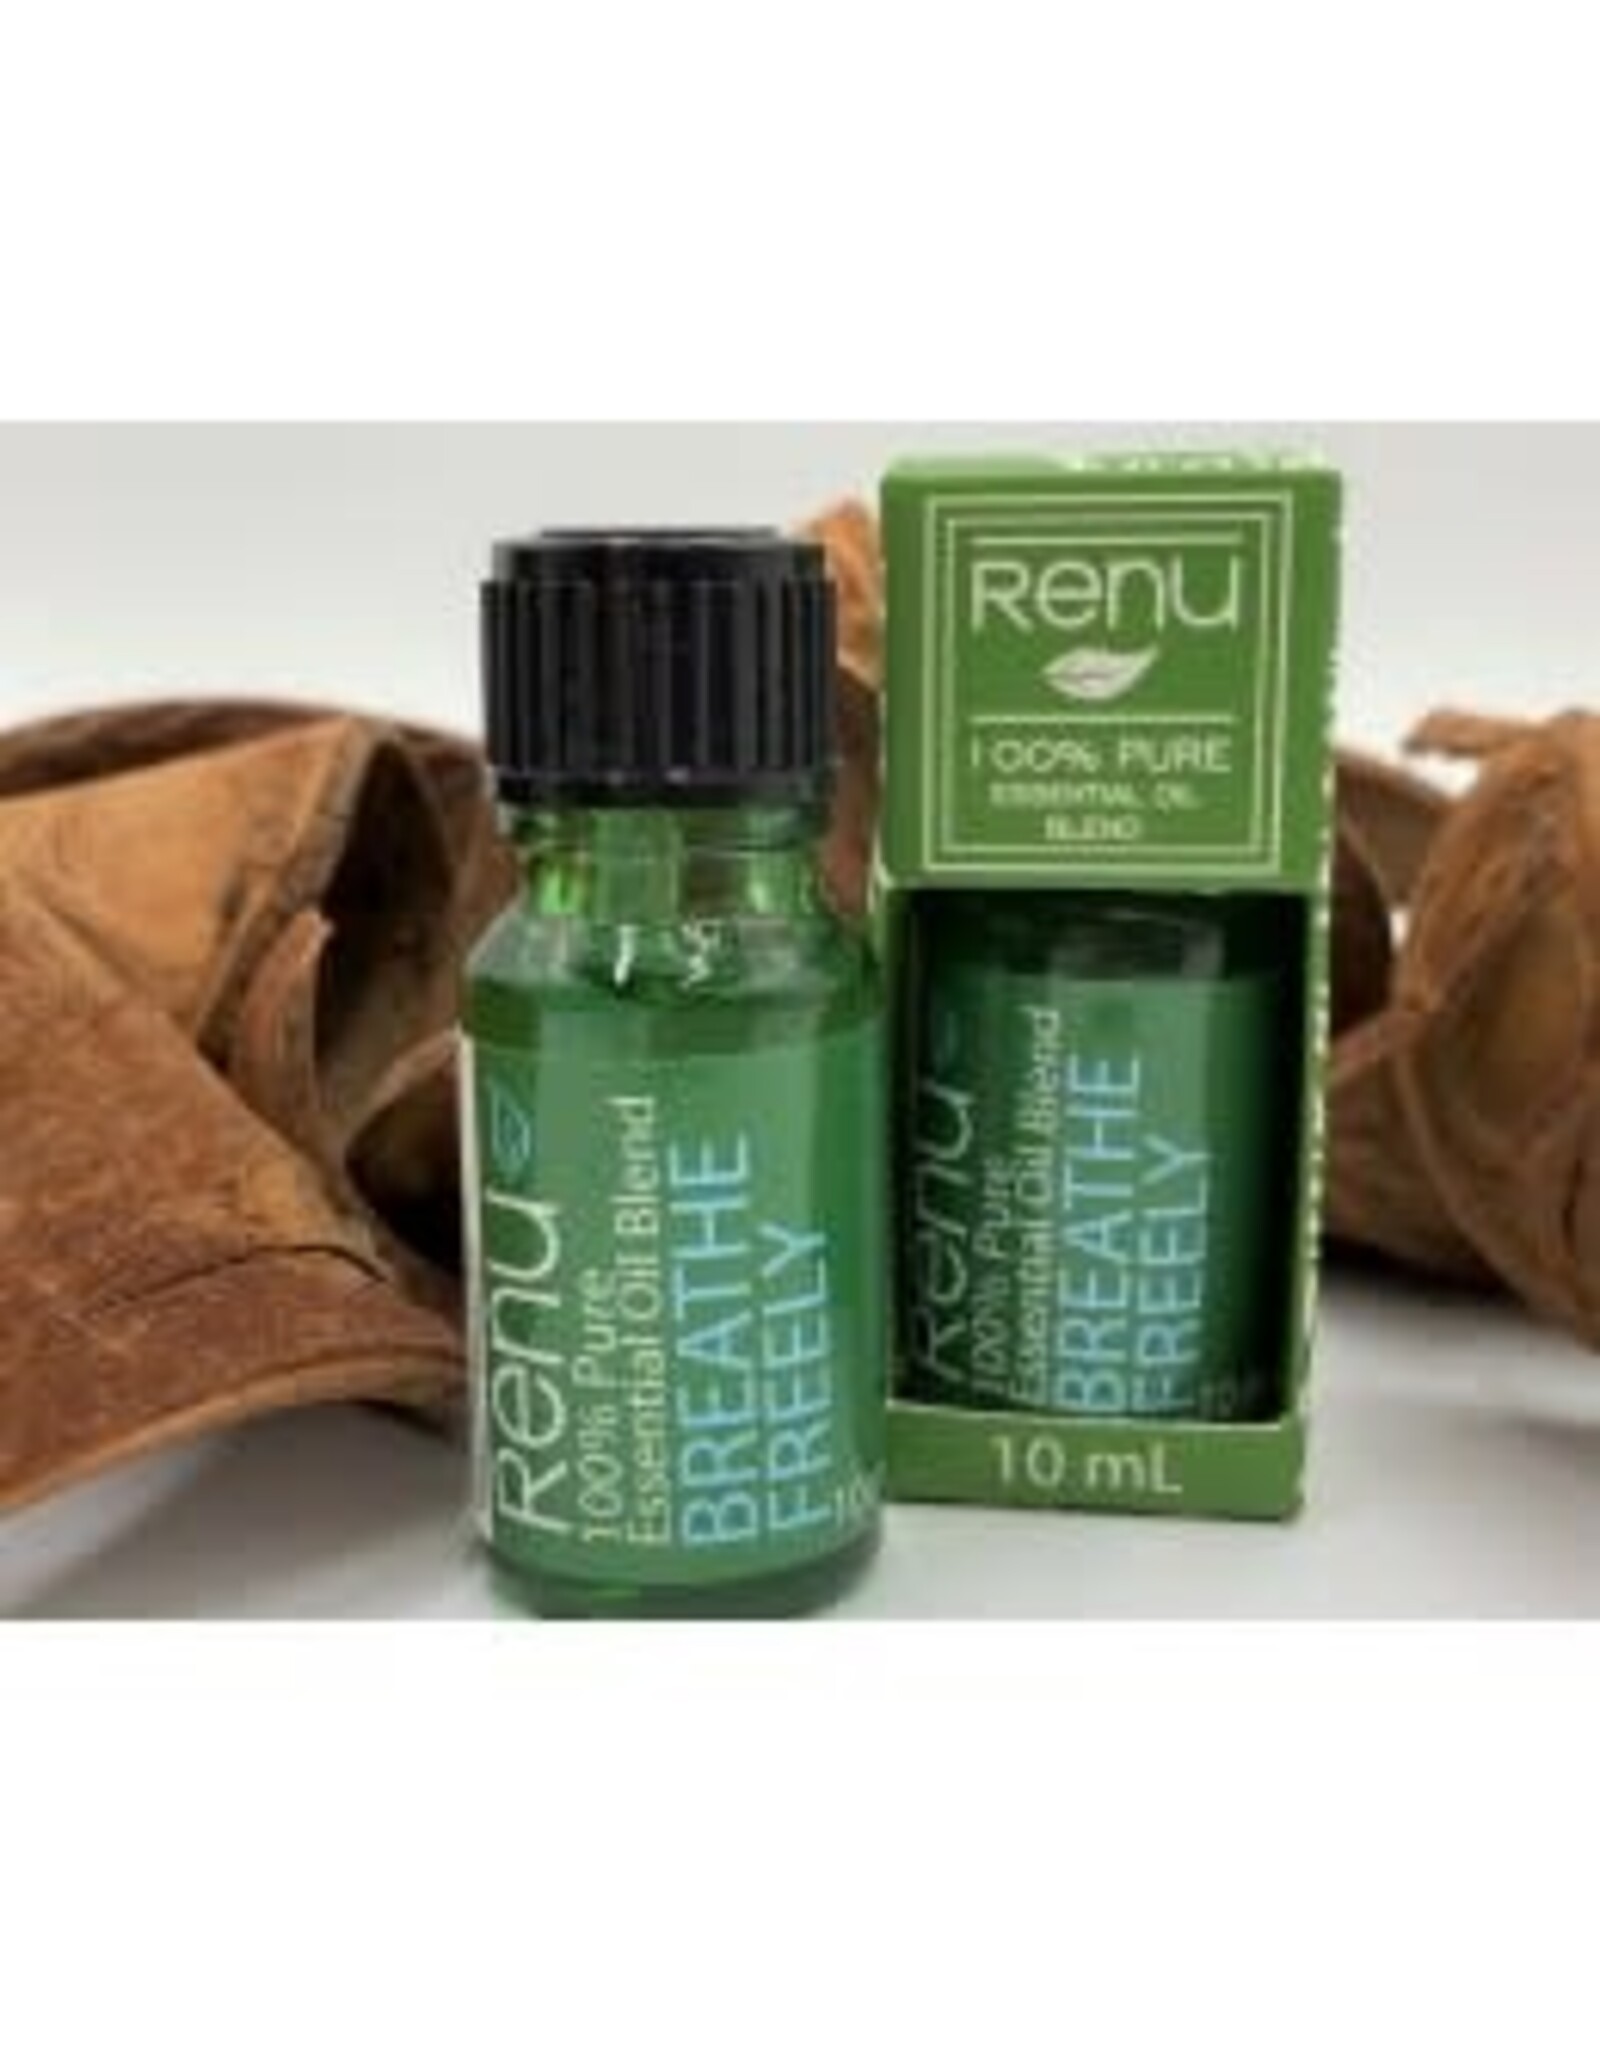 Renu 100% Pure Blend Essential Oils 10ml